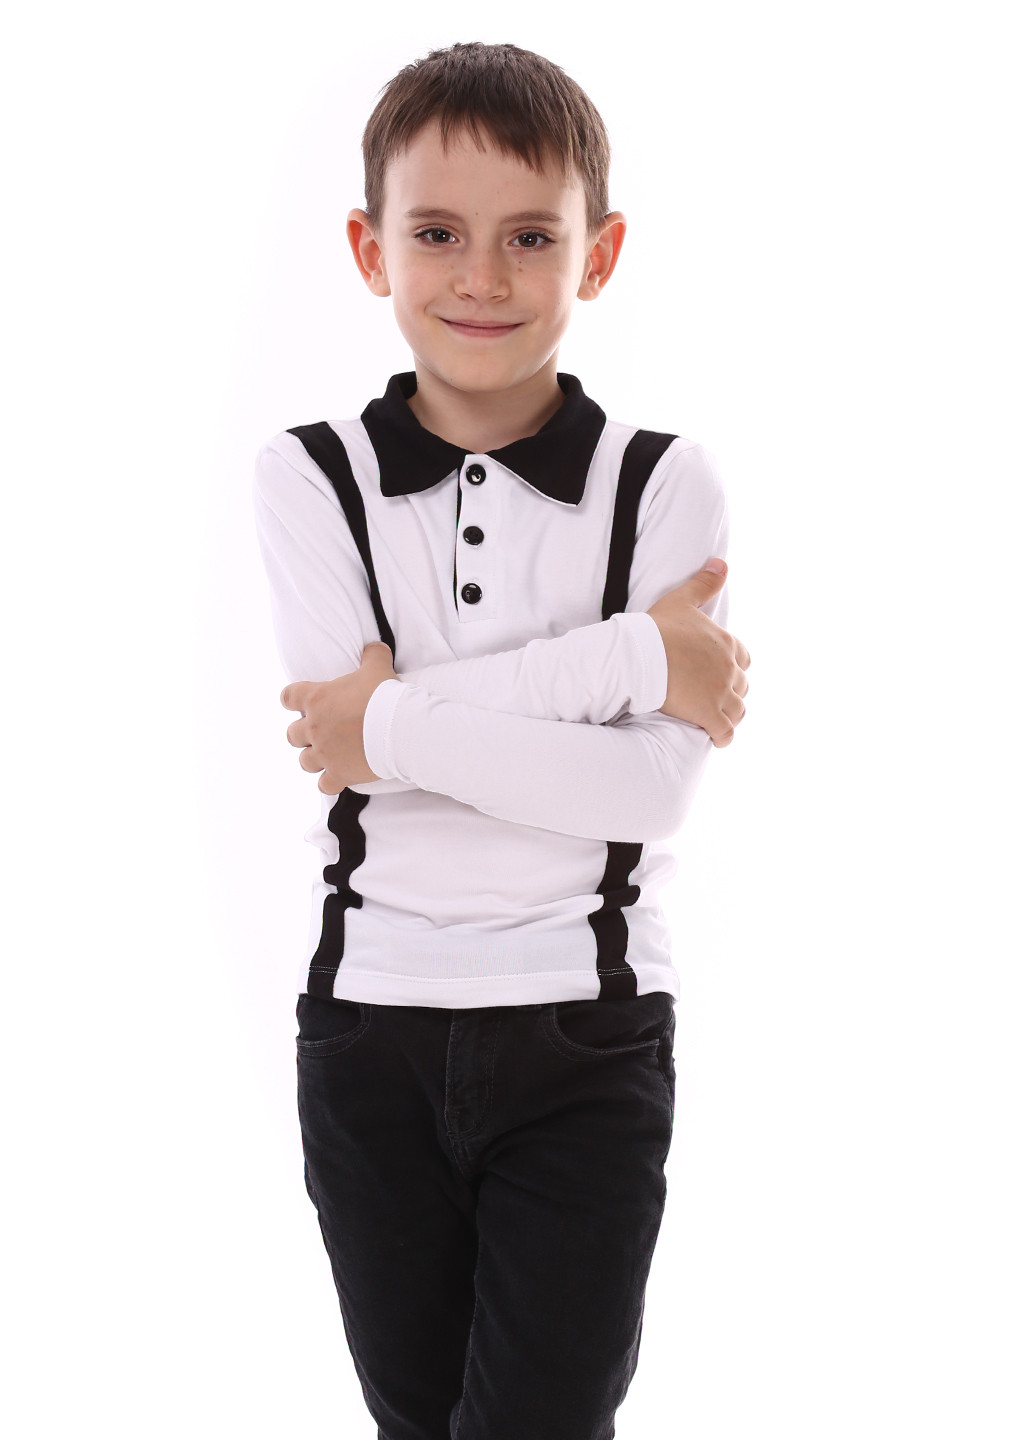 Белая детская футболка-поло для мальчика Vidoli однотонная